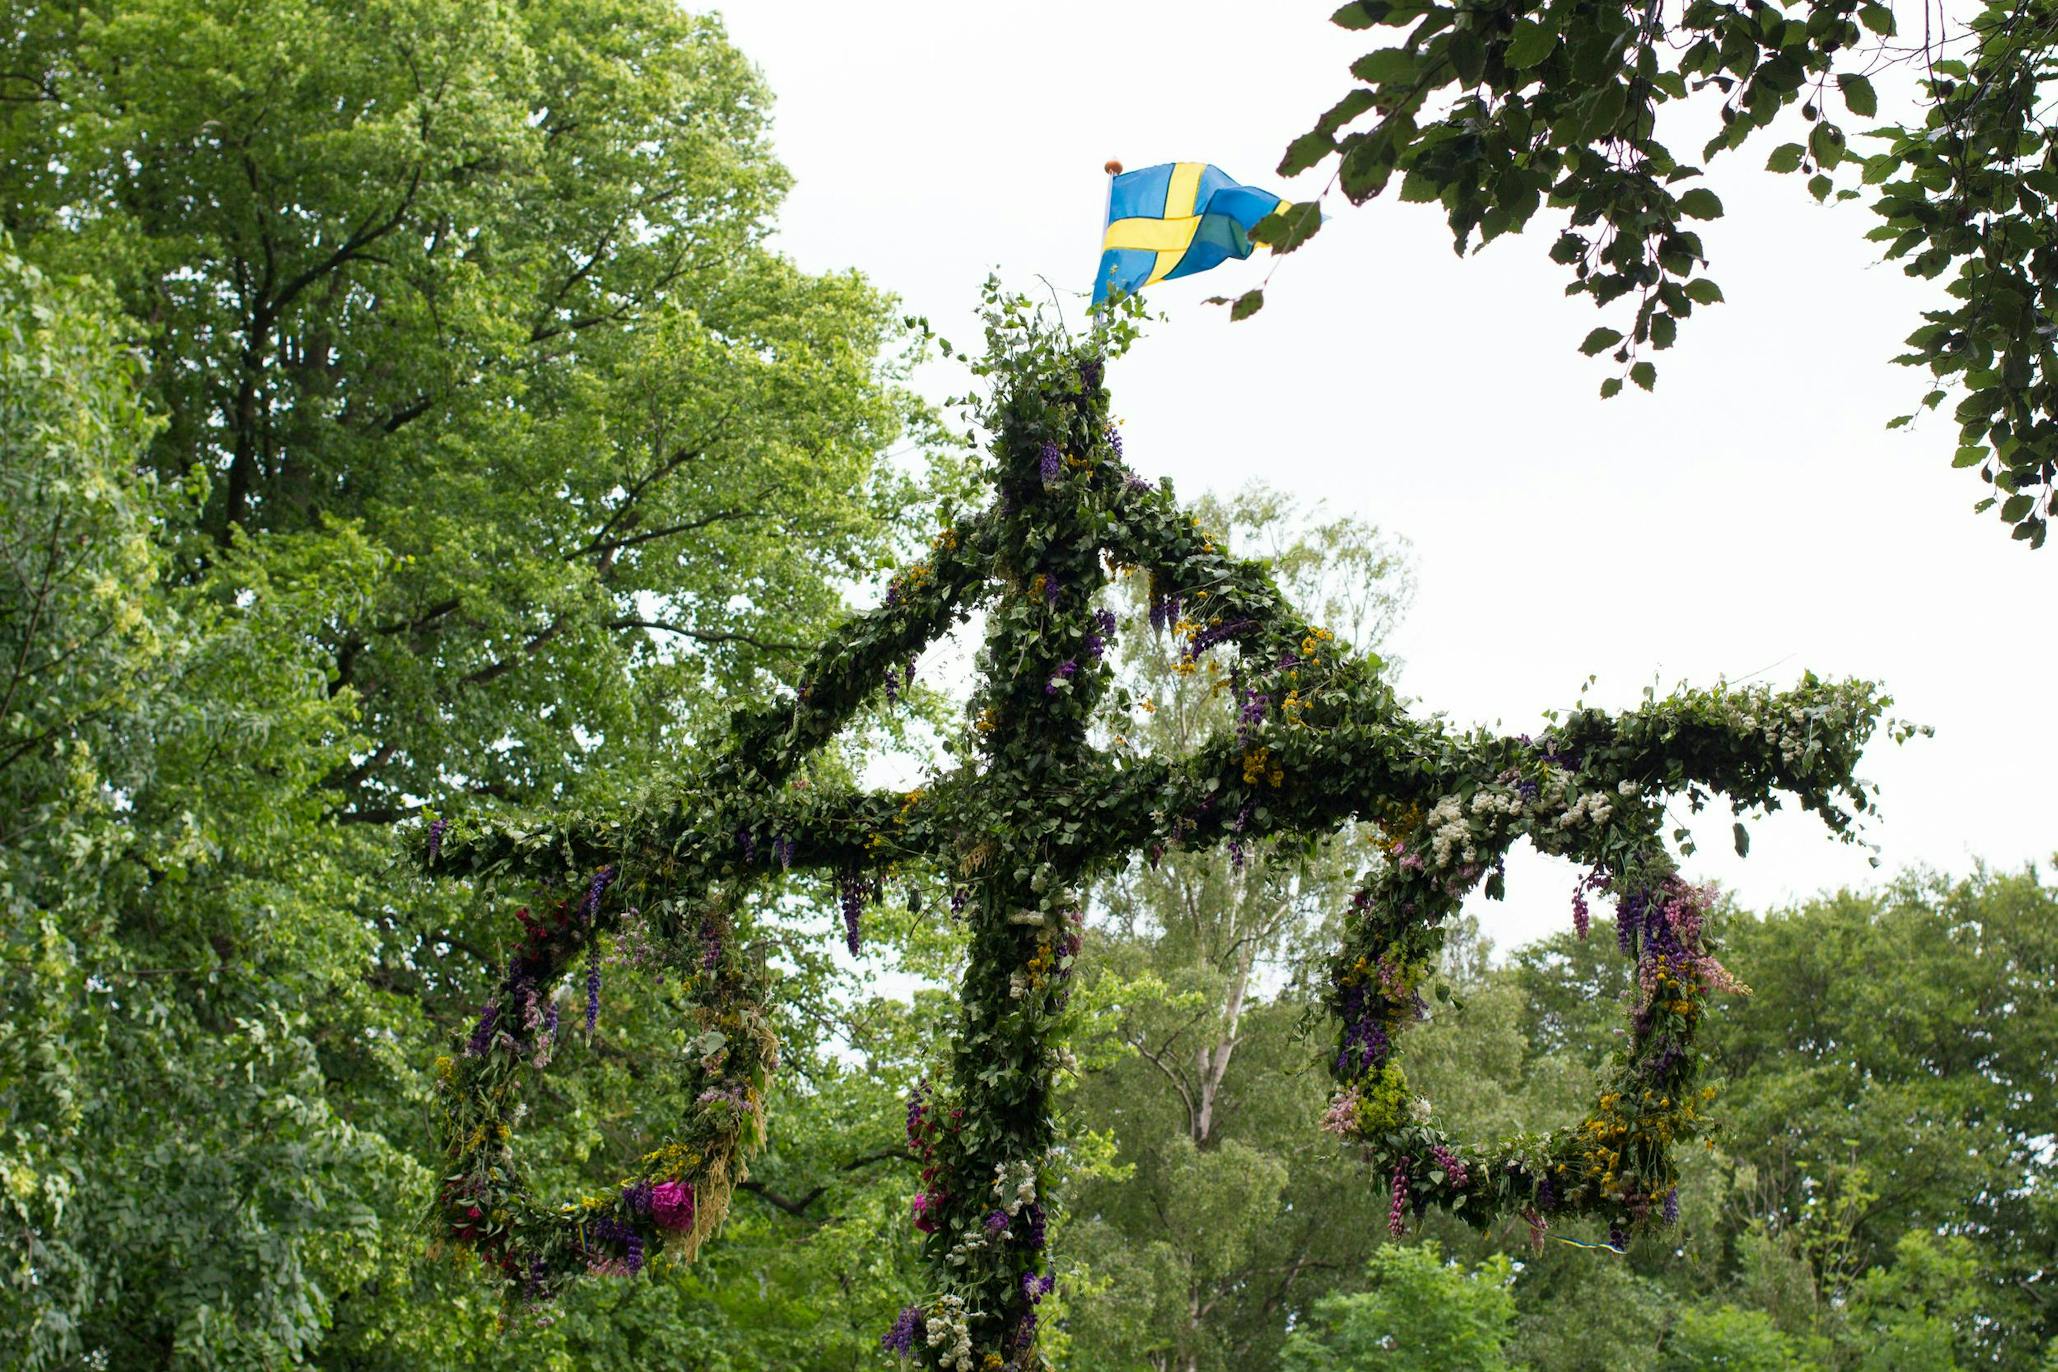 A Swedish Year in Food & Festivals